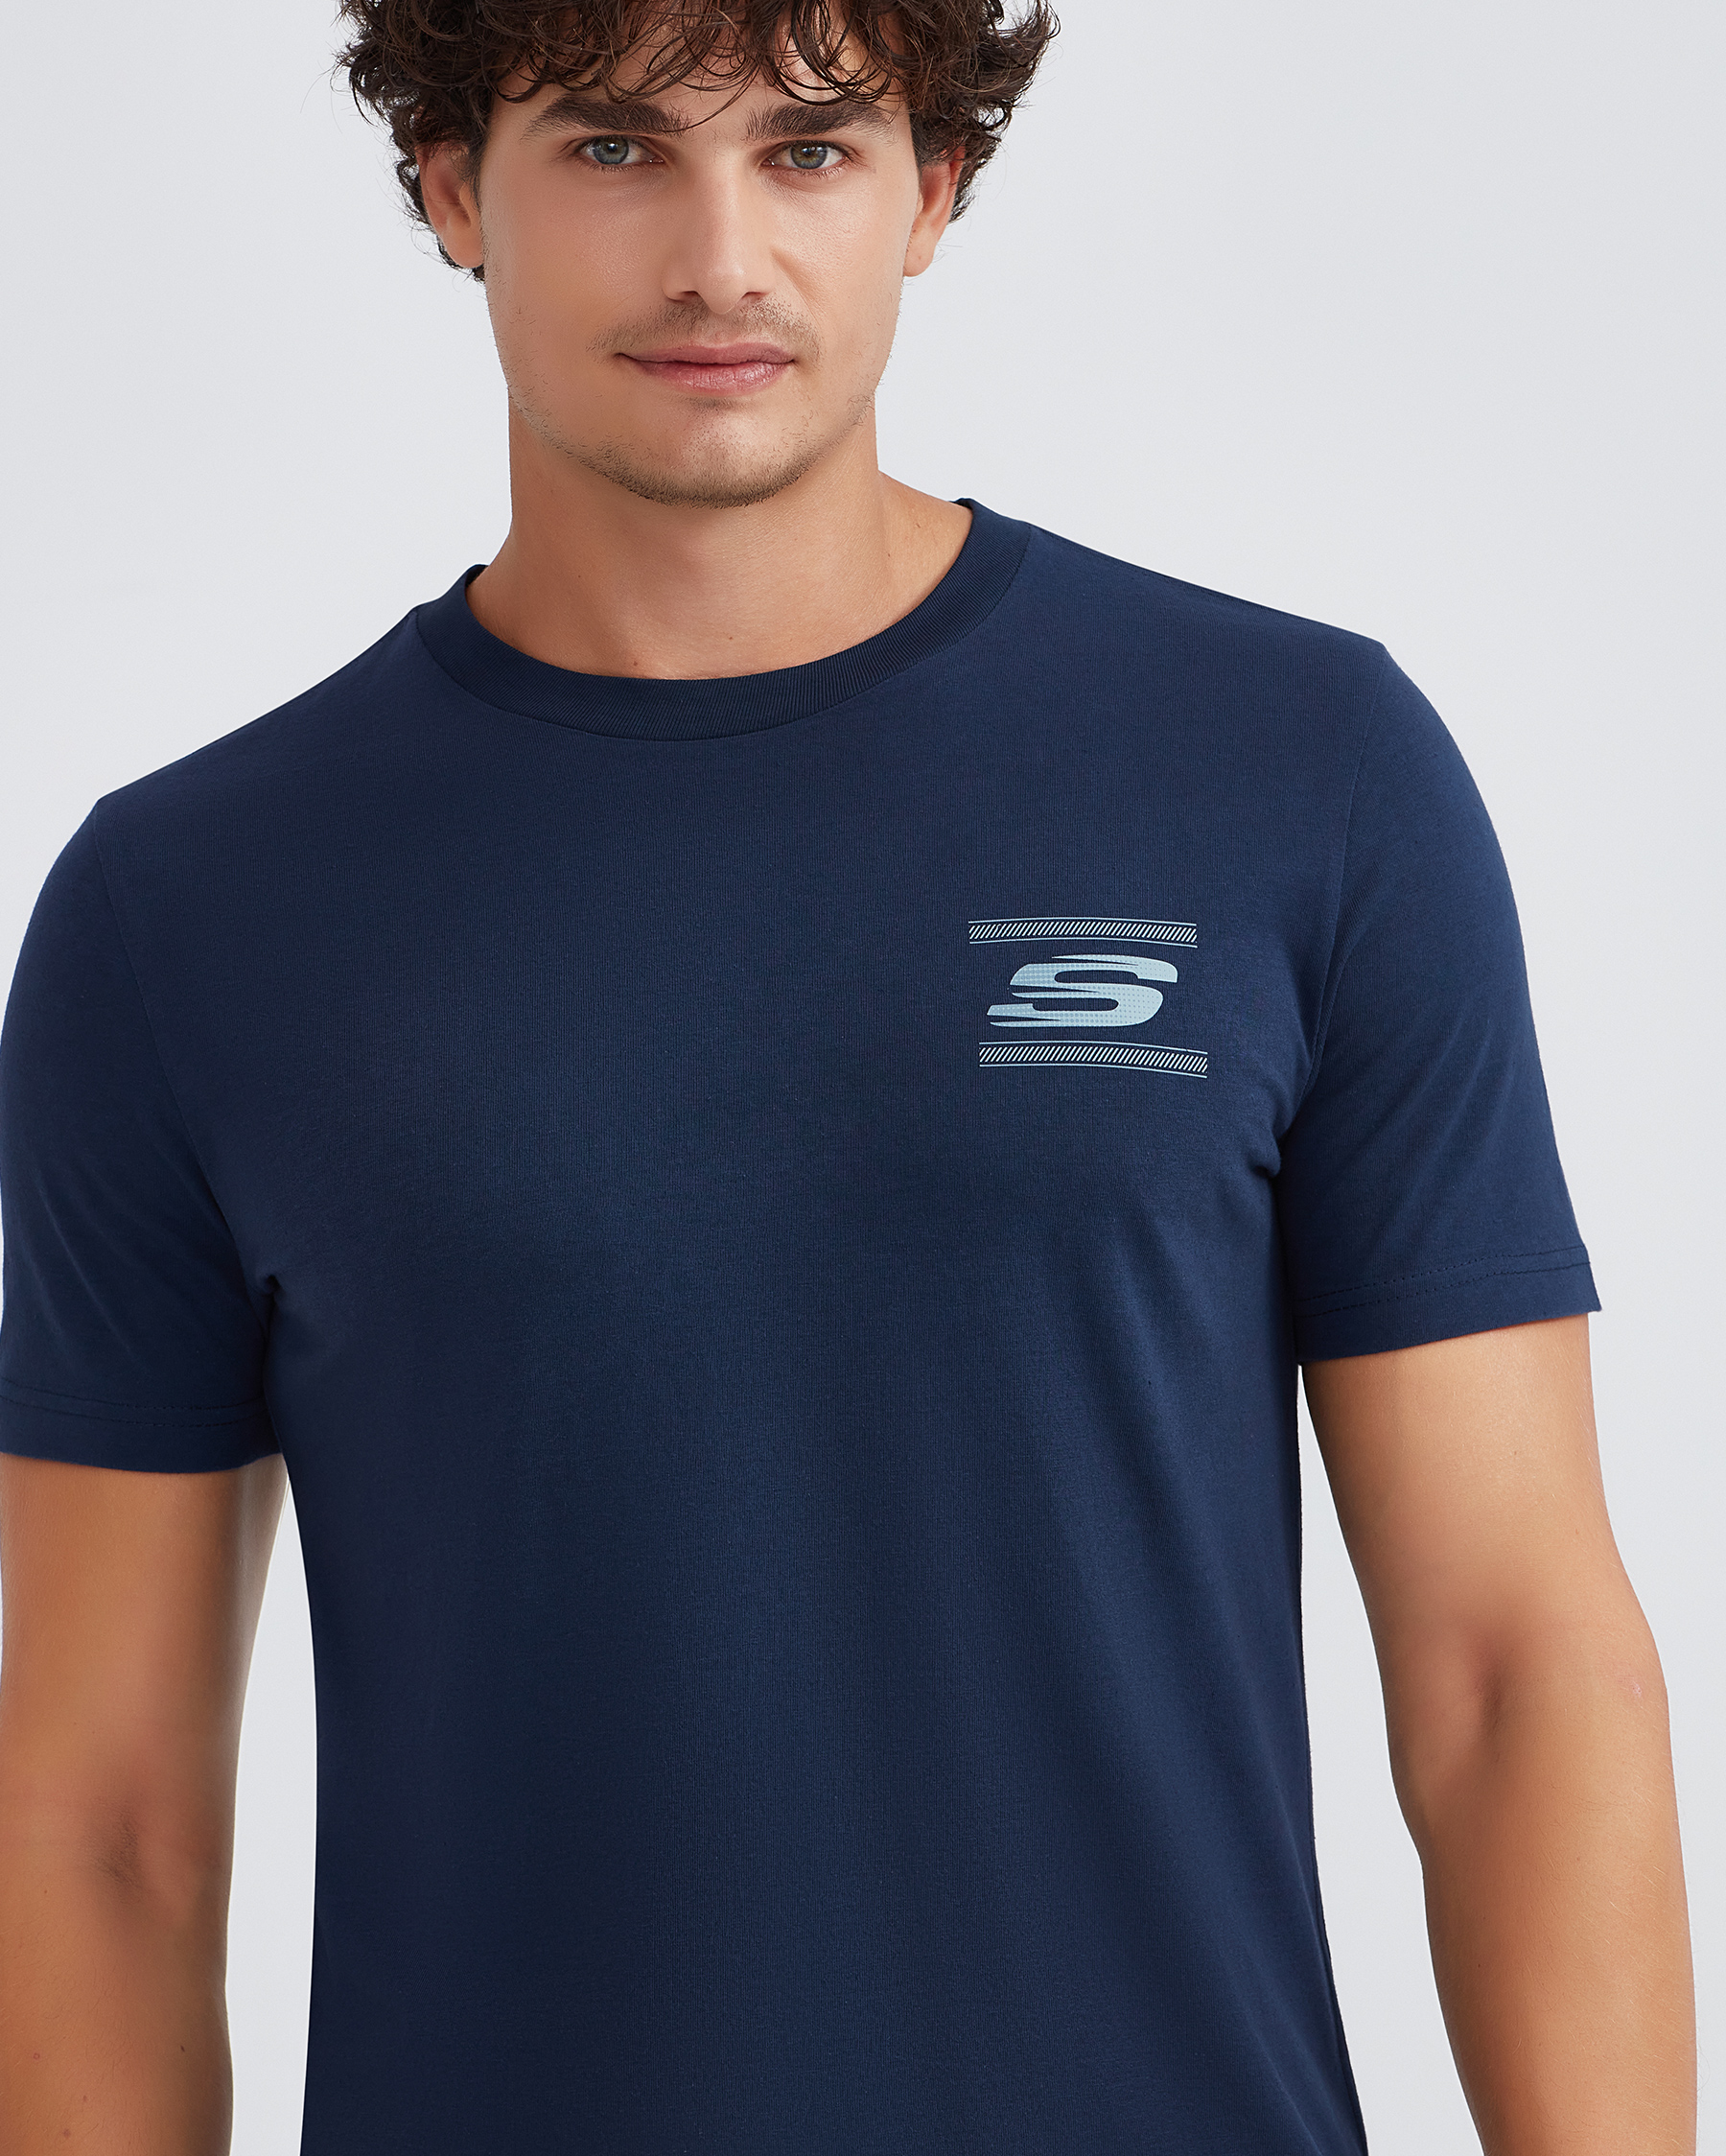 Tshirt M T-shirt Tee Erkek Skechers Neck Graphic S232339-410 Crew Lacivert